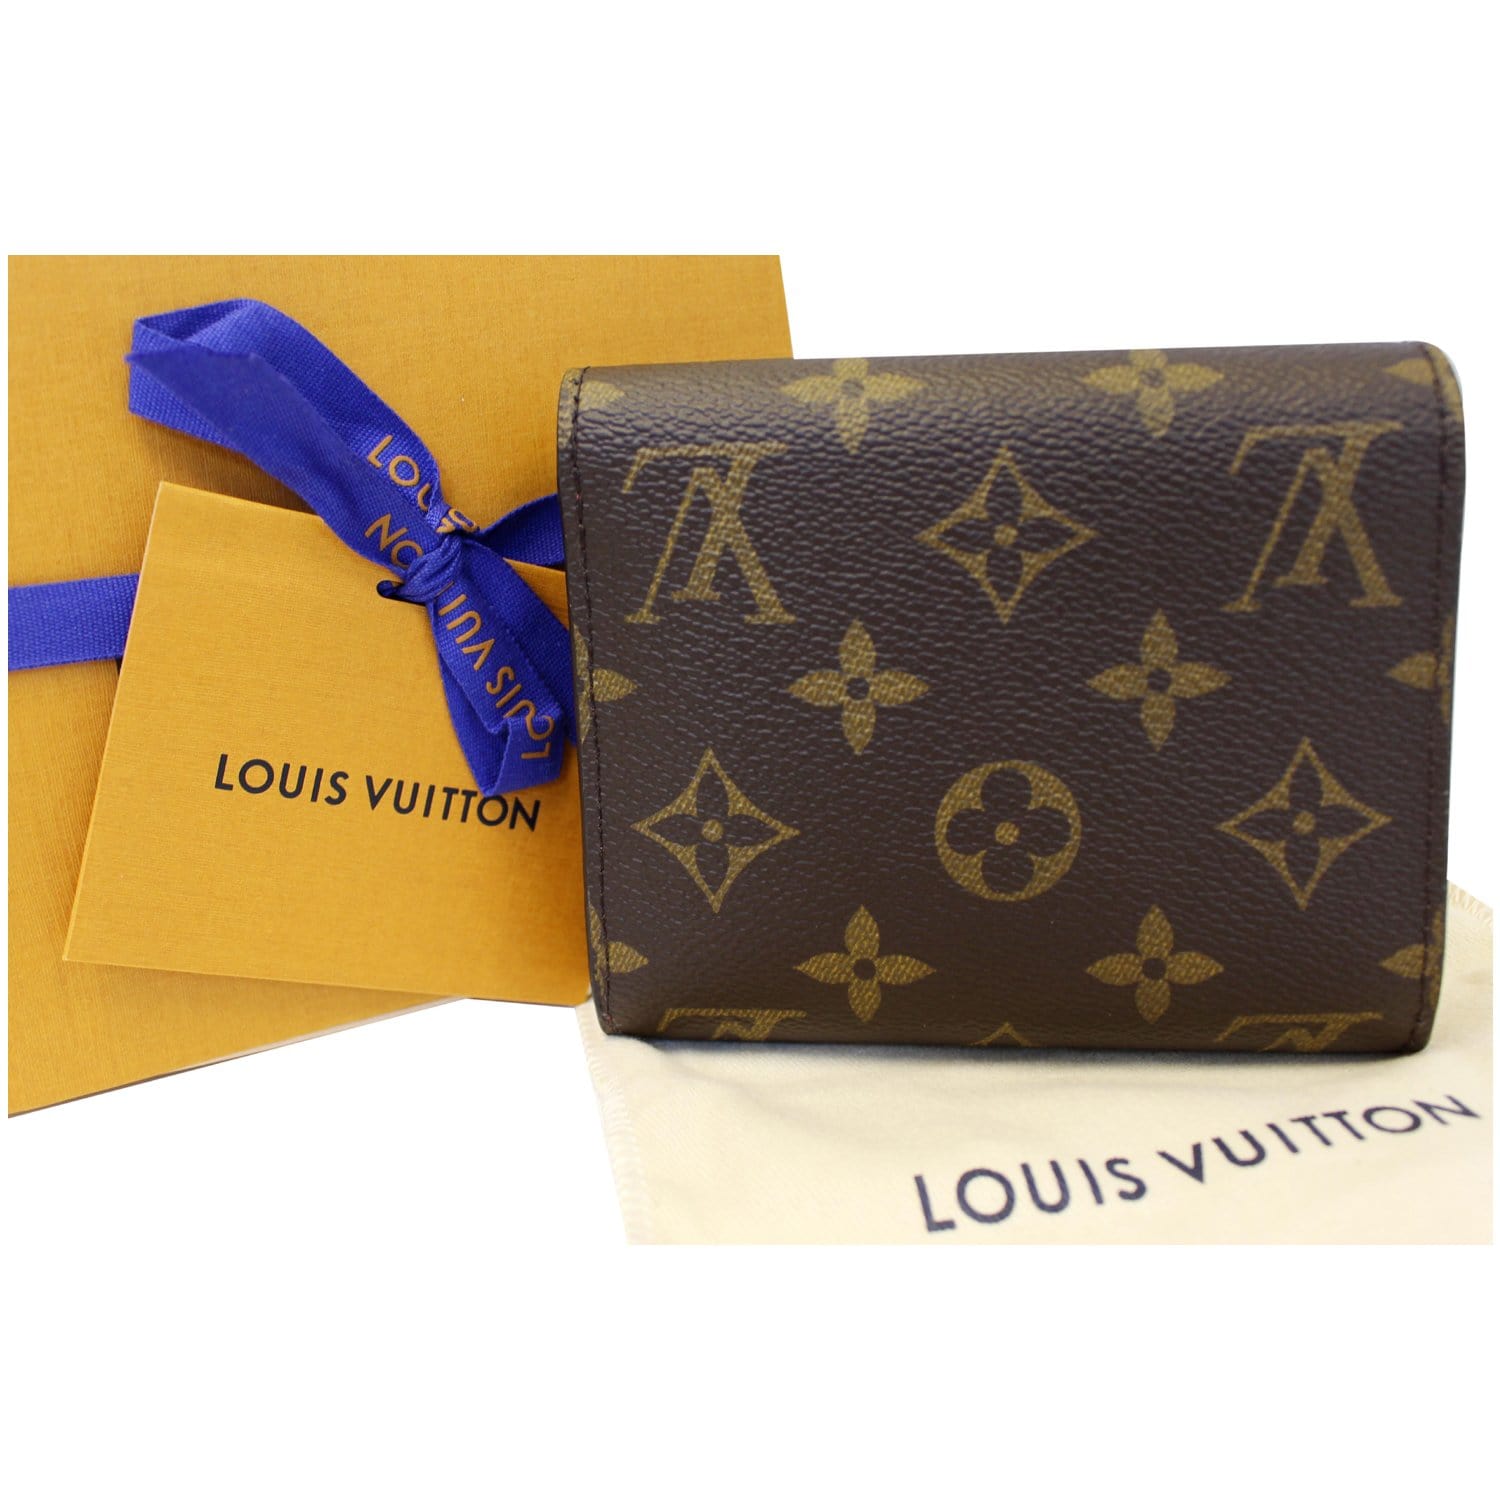 Louis Vuitton - Lou Wallet - Monogram - Fuchsia - Women - Luxury